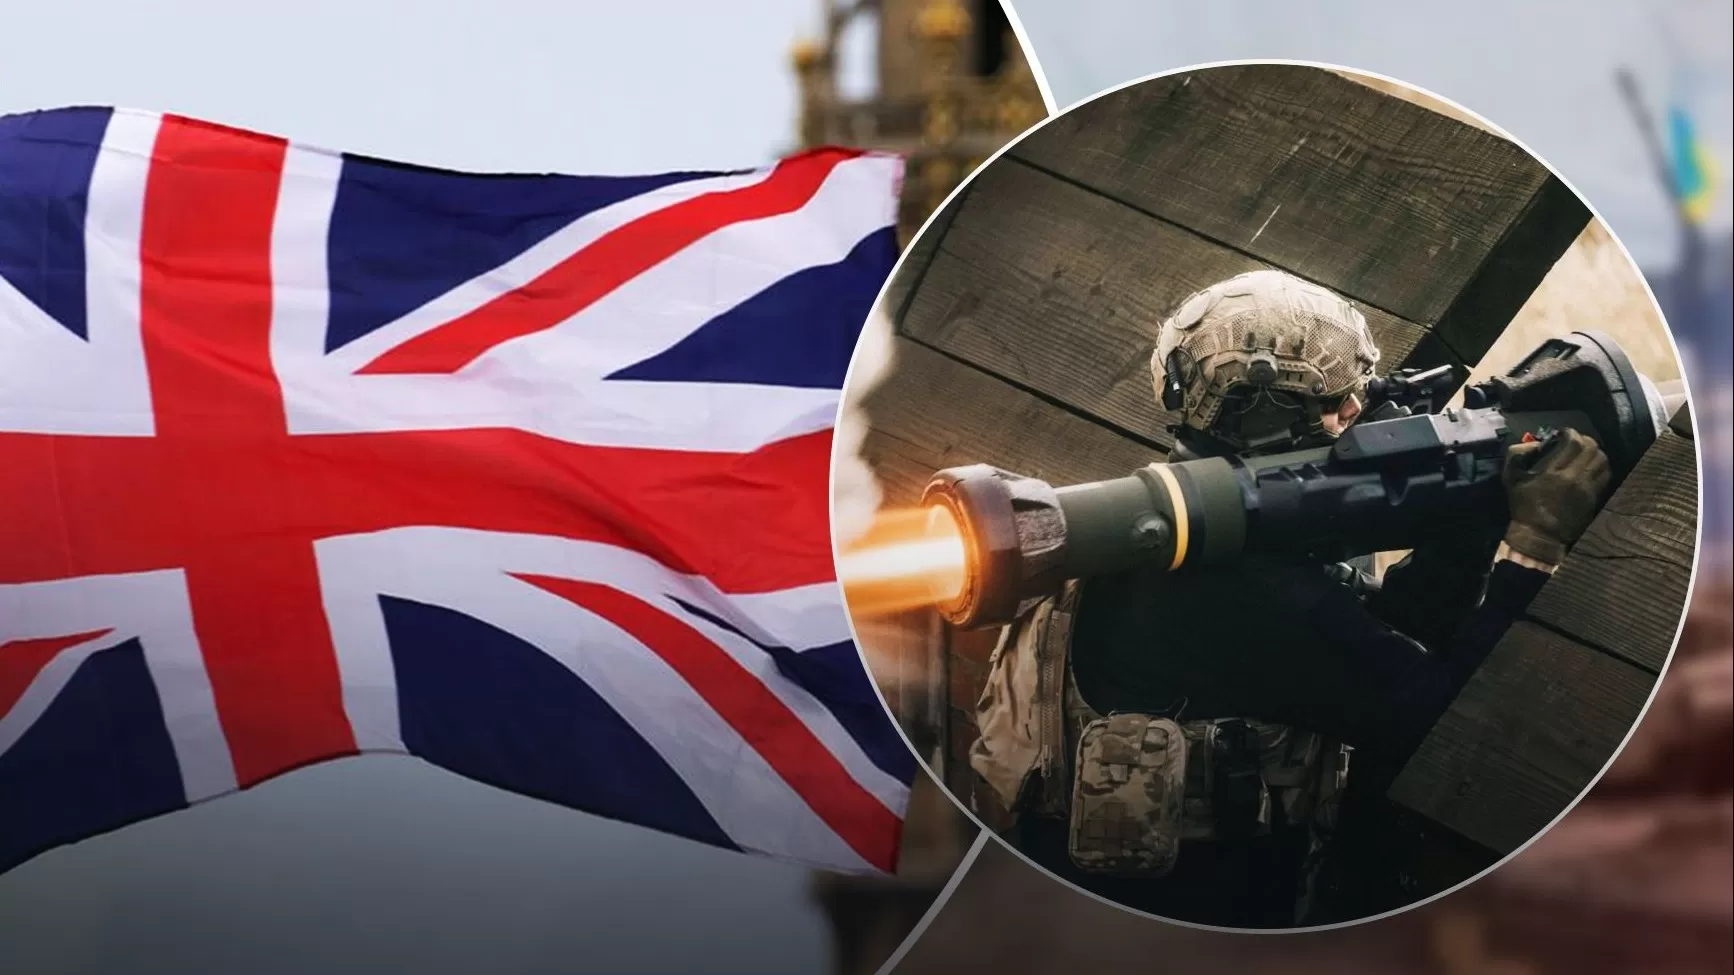 Մեծ Բրիտանիան մտադիր է հայտարարել Ուկրաինային ռազմական օգնության նոր մեծ փաթեթի մասին